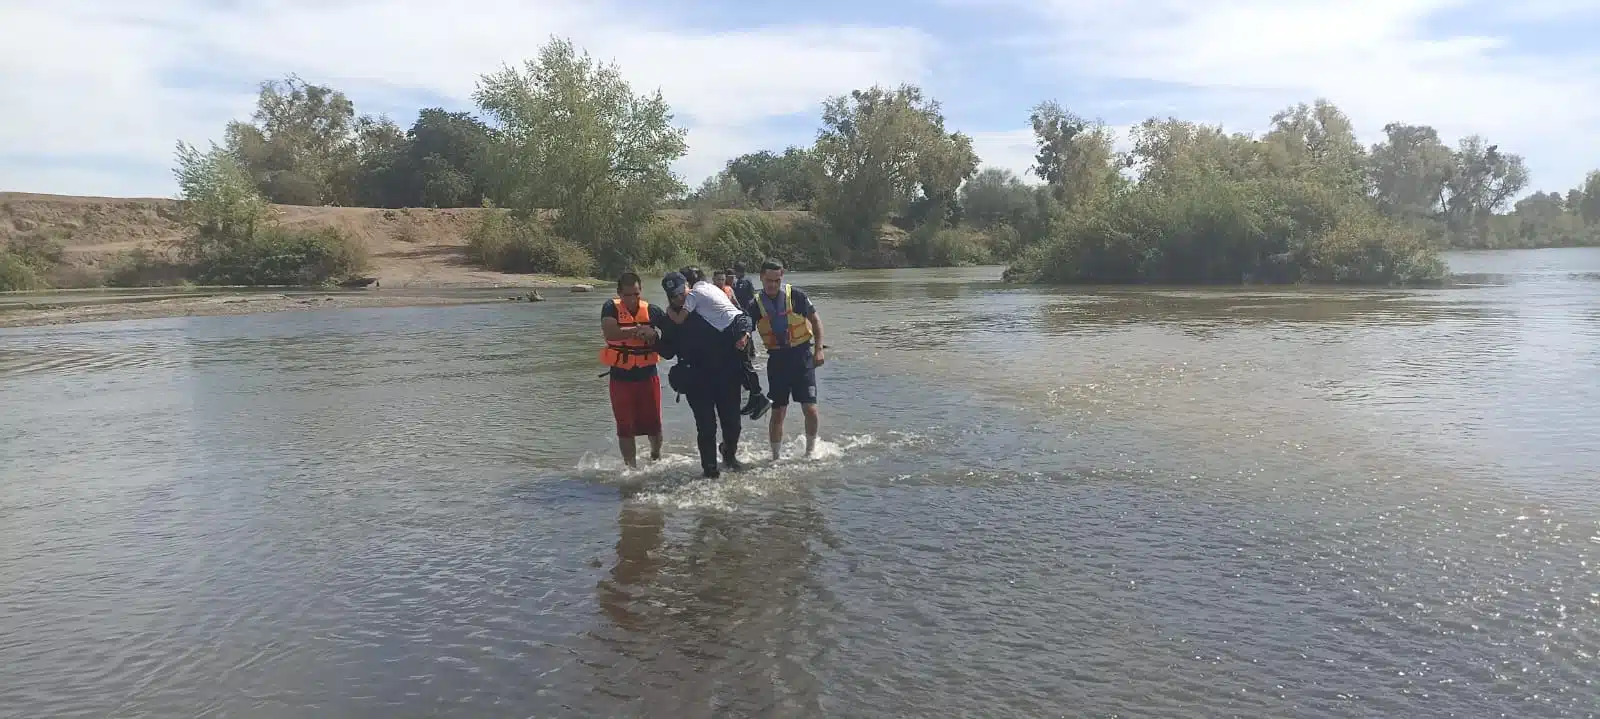 Rescate de personas en el Río Sinaloa en Guasave